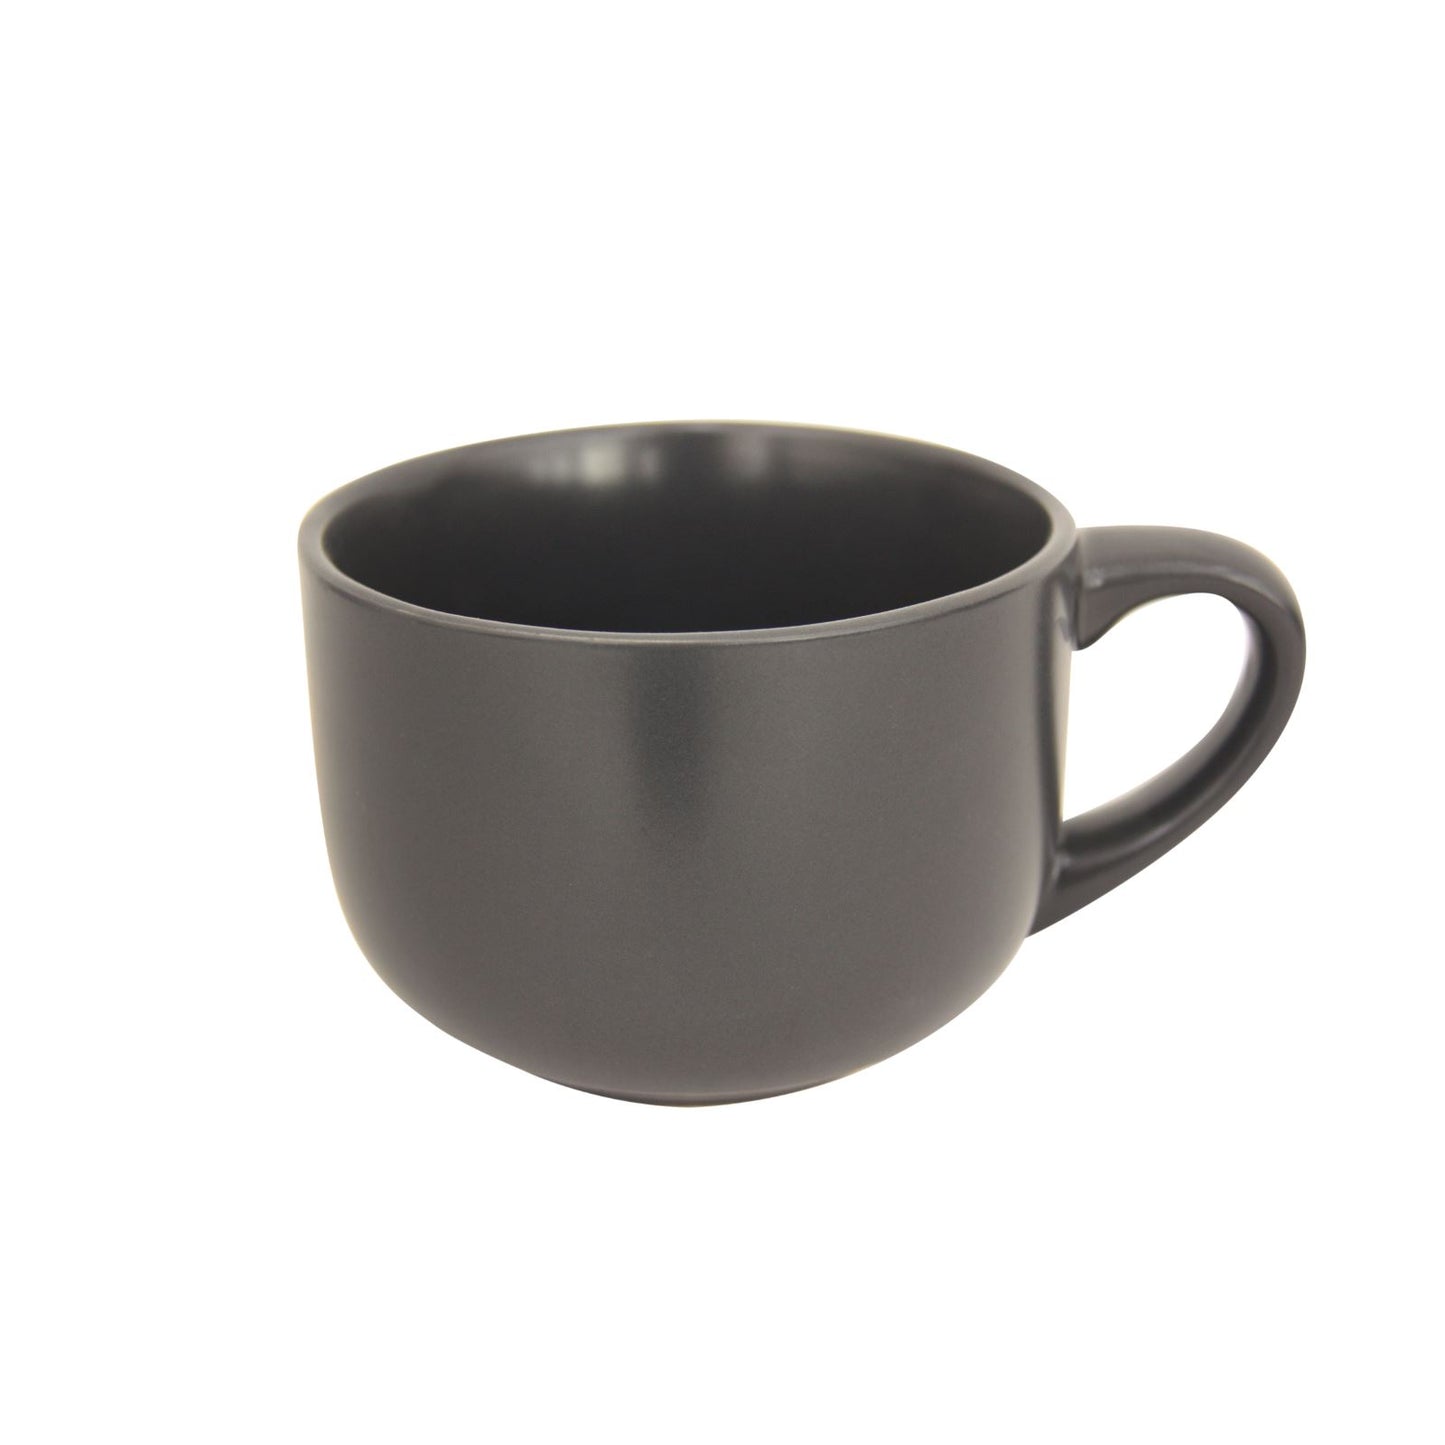 grey large soup mug on white background.